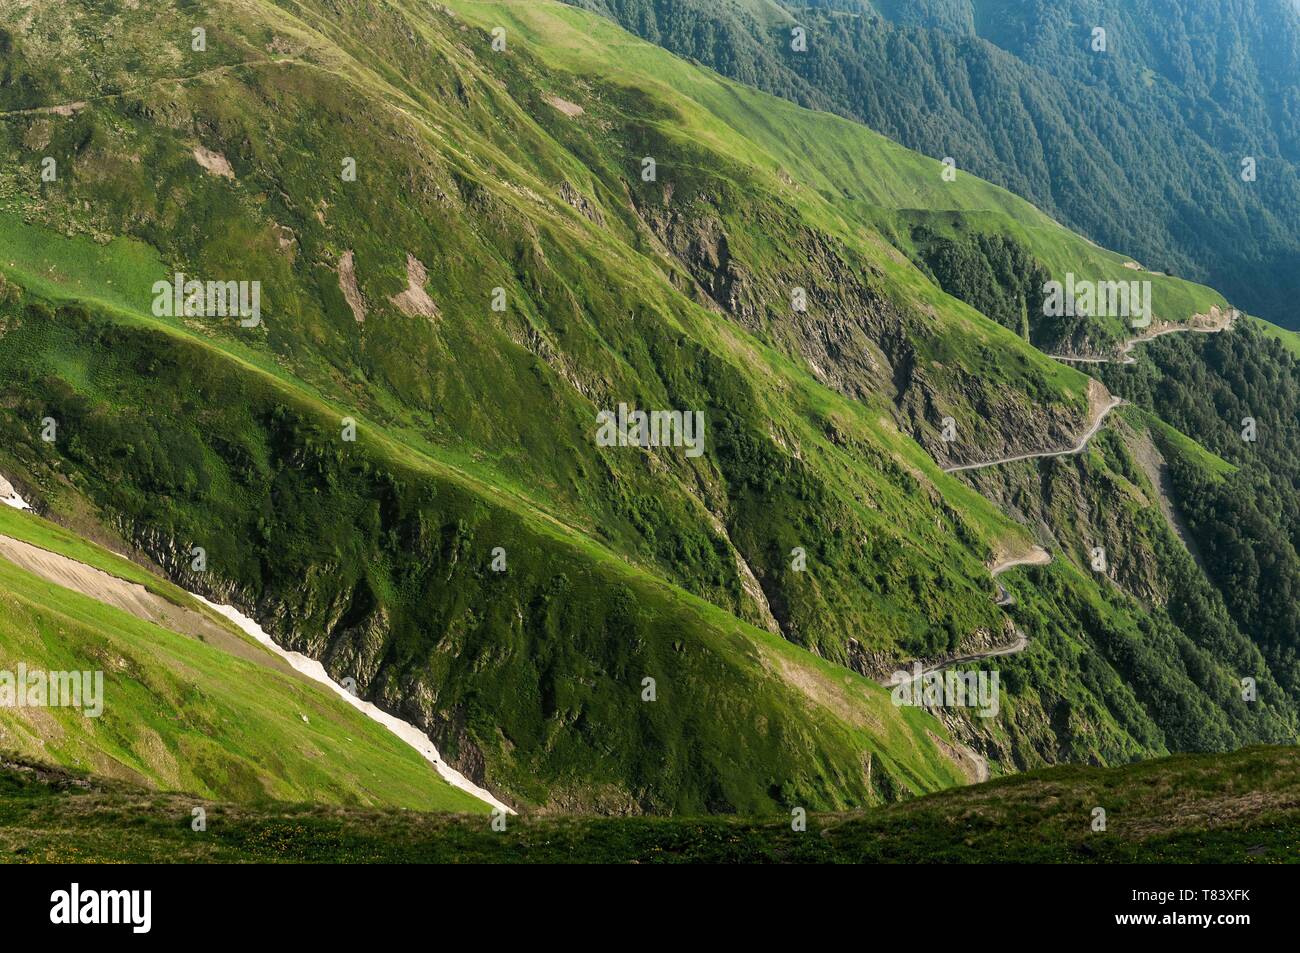 La Georgia, regione di Kakheti, famose Gorges di Alazani, pizzo via per il Col d'Abano (2826m) che permette il passaggio tra Kakheti e regioni Touchetie Foto Stock